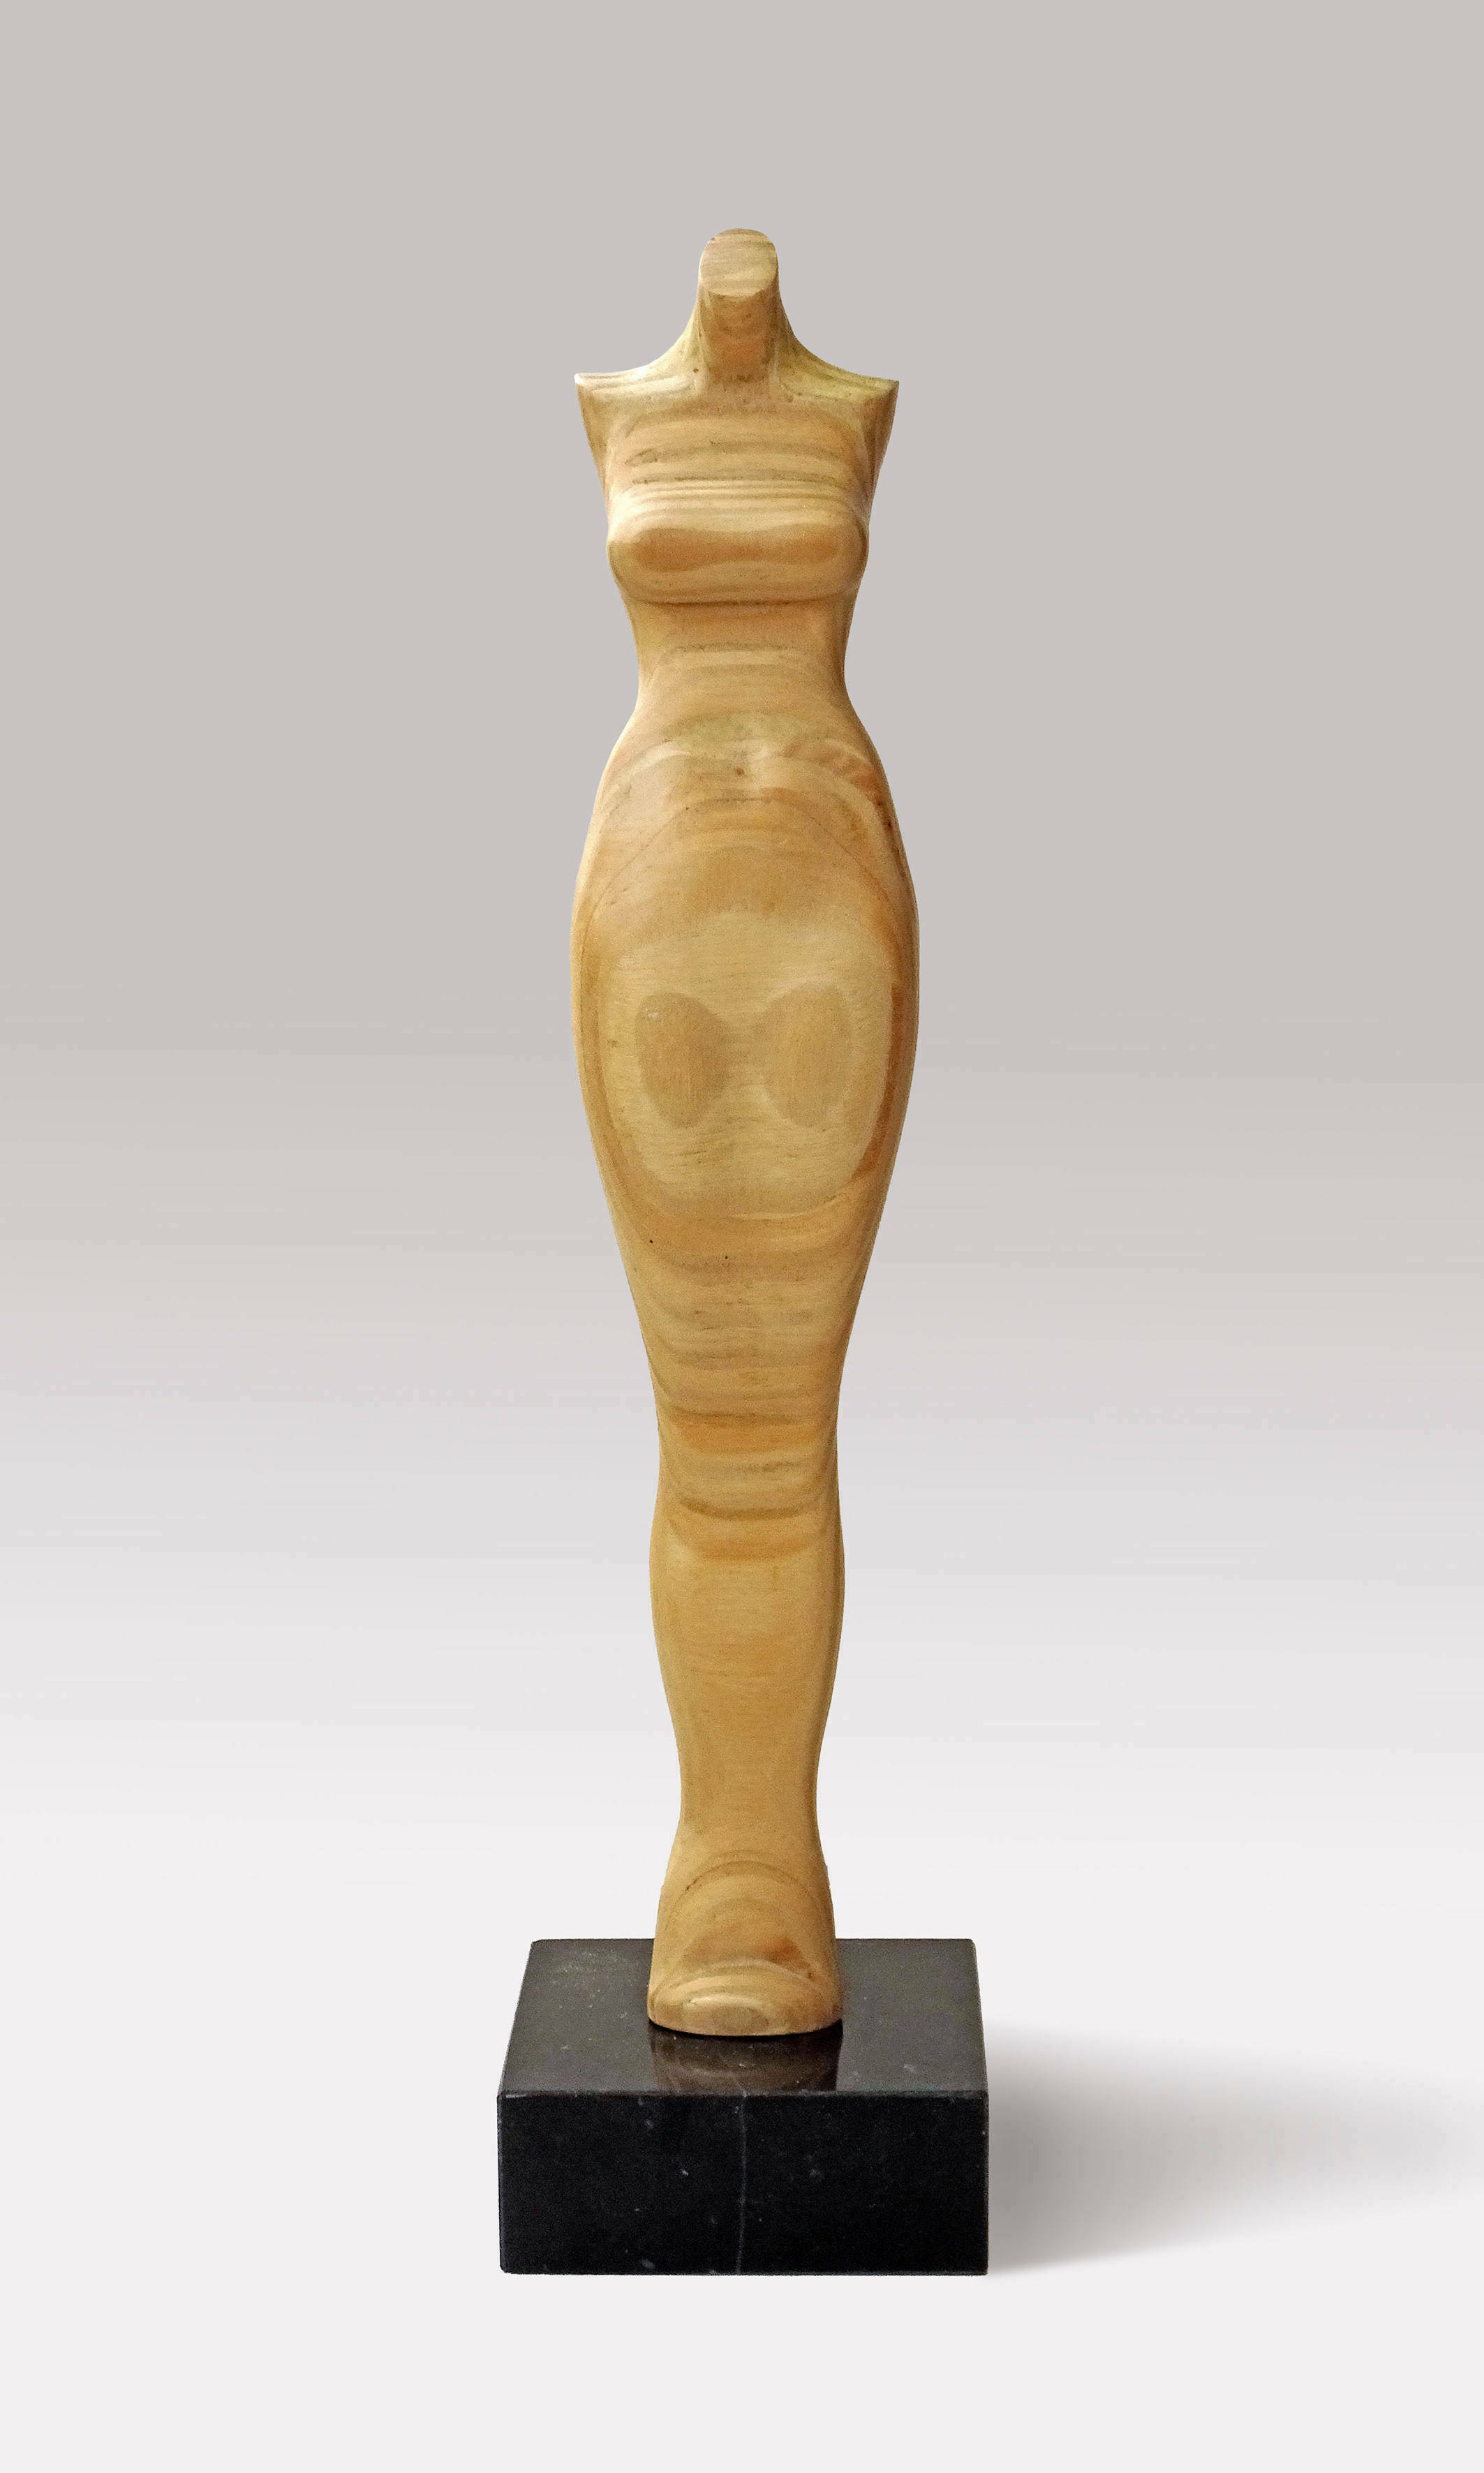 Sculpture "Model (wooden figure)" (2001)